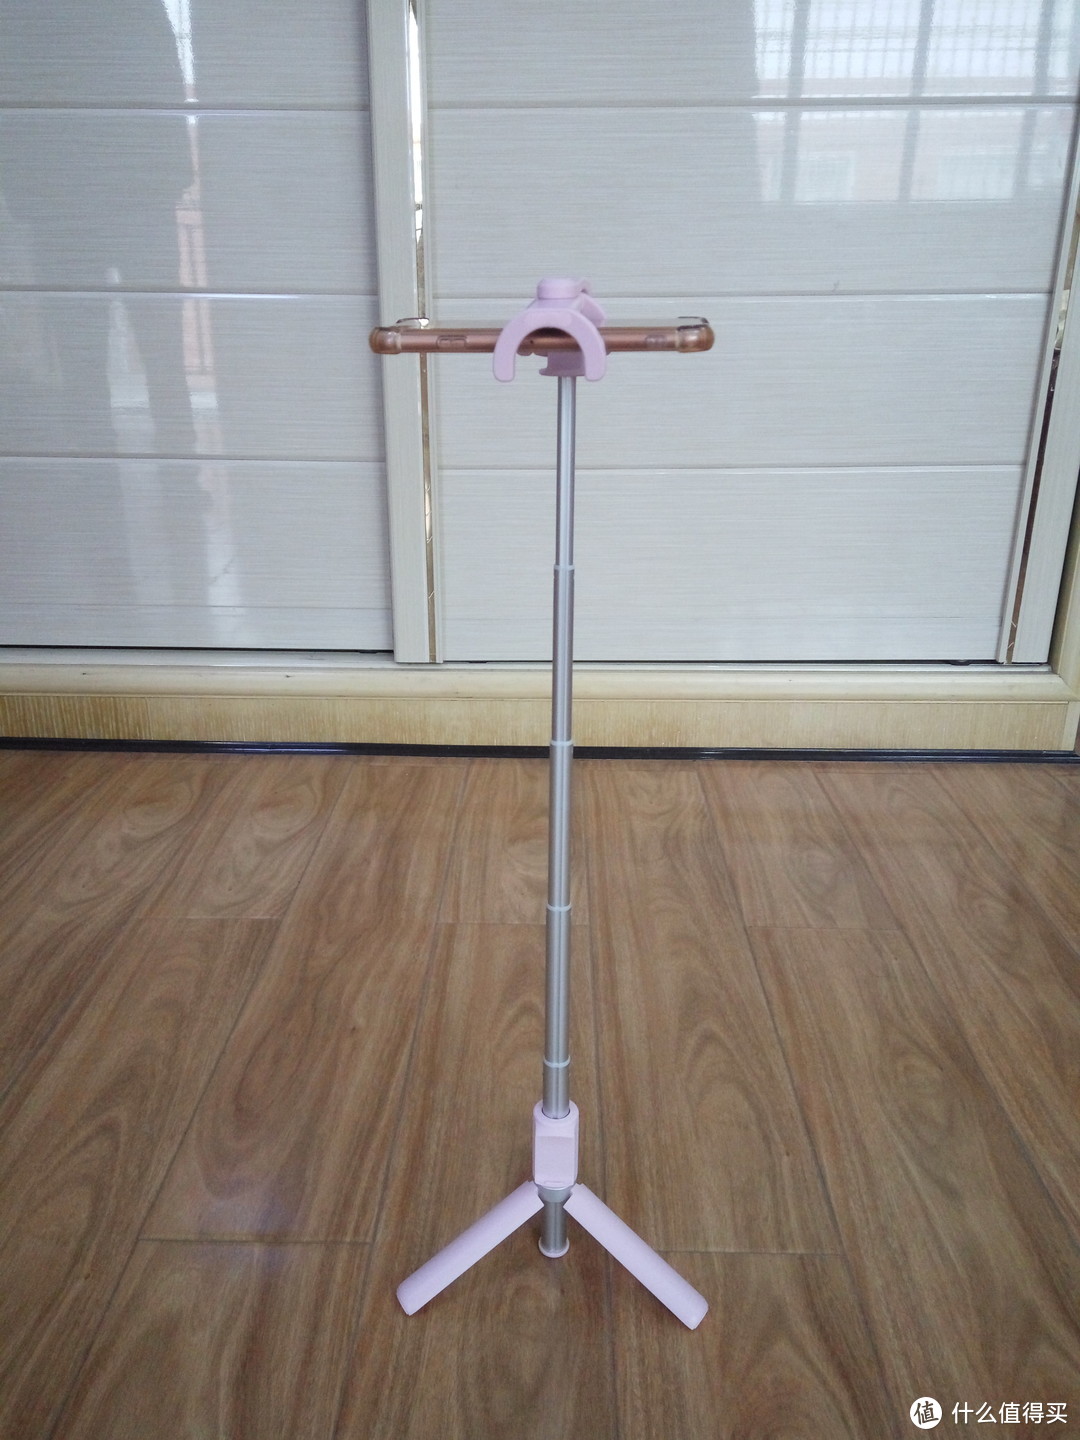 #晒单大晒#华为 荣耀AF15蓝牙无线自拍杆粉色款开箱，附小米自拍杆简单对比